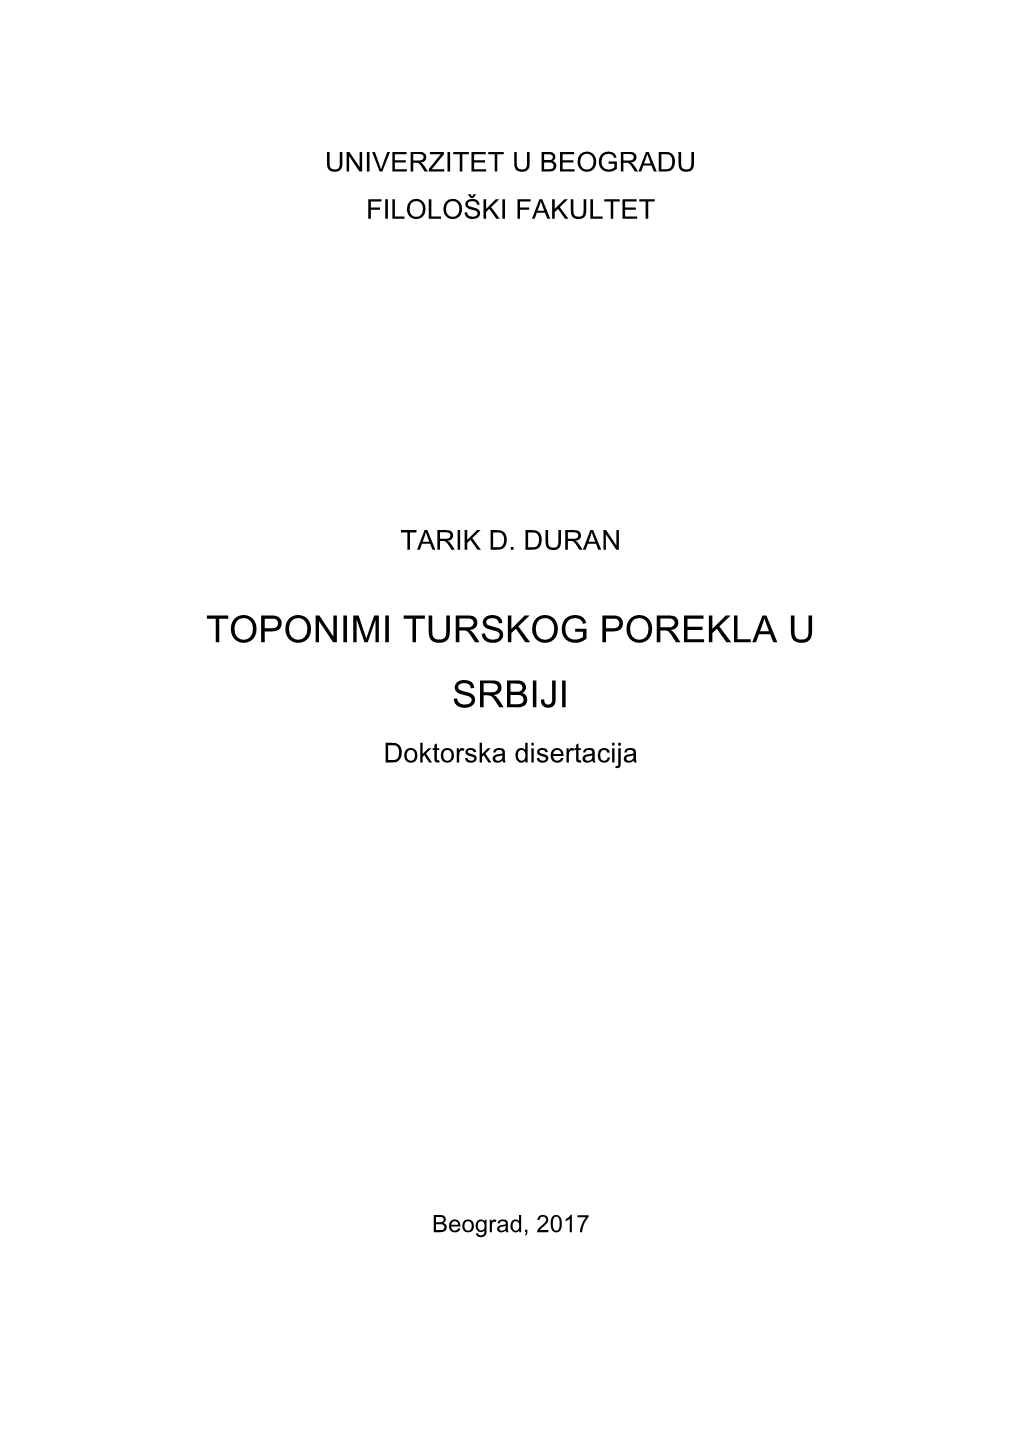 TOPONIMI TURSKOG POREKLA U SRBIJI Doktorska Disertacija